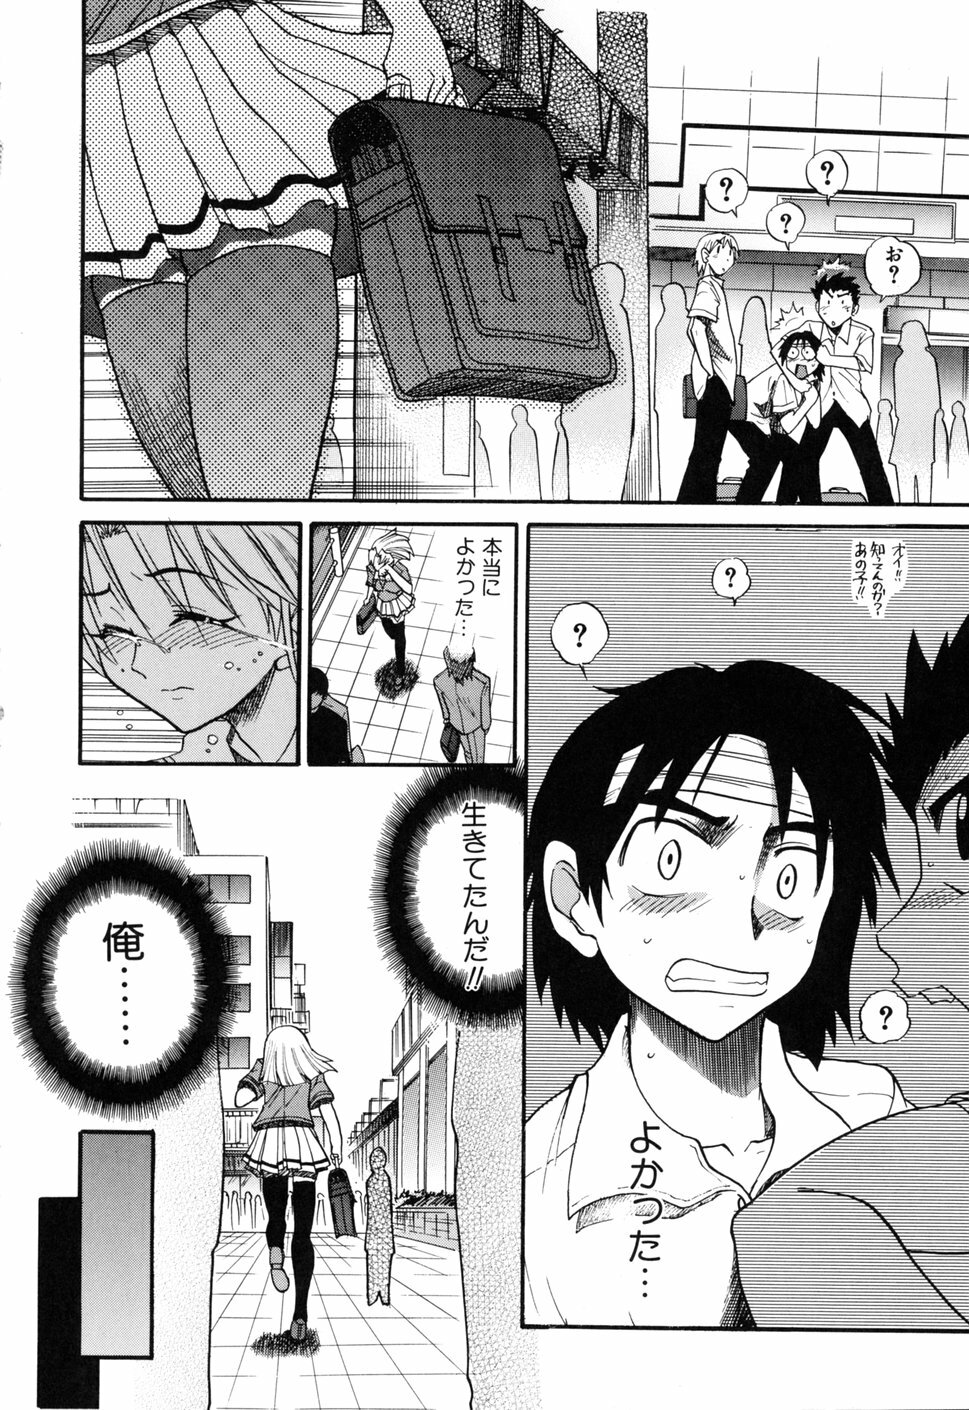 [DISTANCE] Ochiru Tenshi Vol. 1 page 8 full